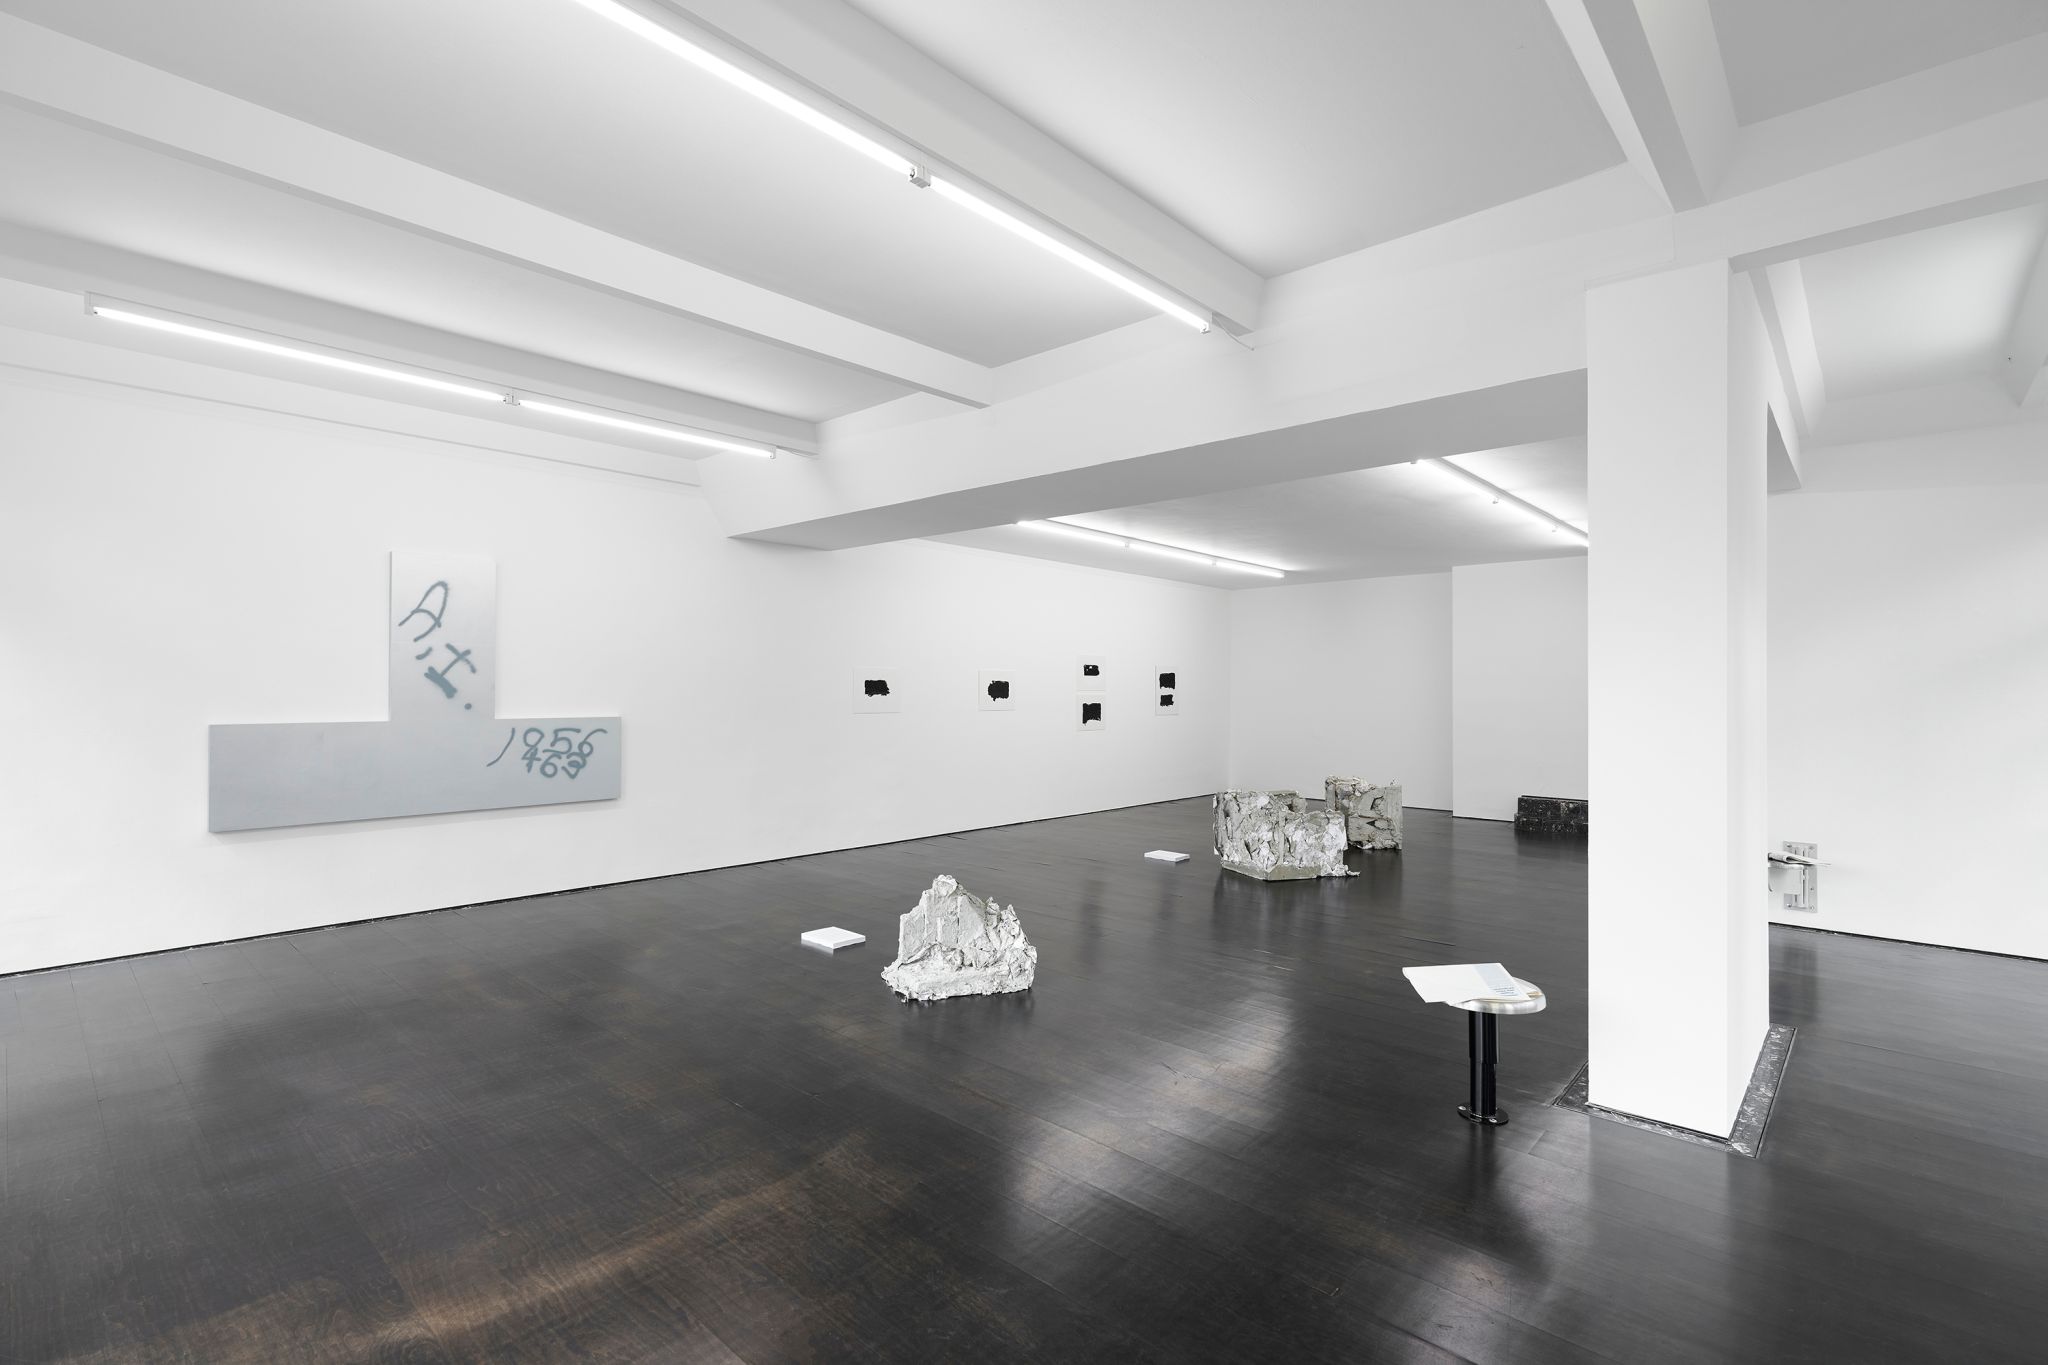 Installation view, Benefit of the Doubt, Deborah Schamoni, 2021